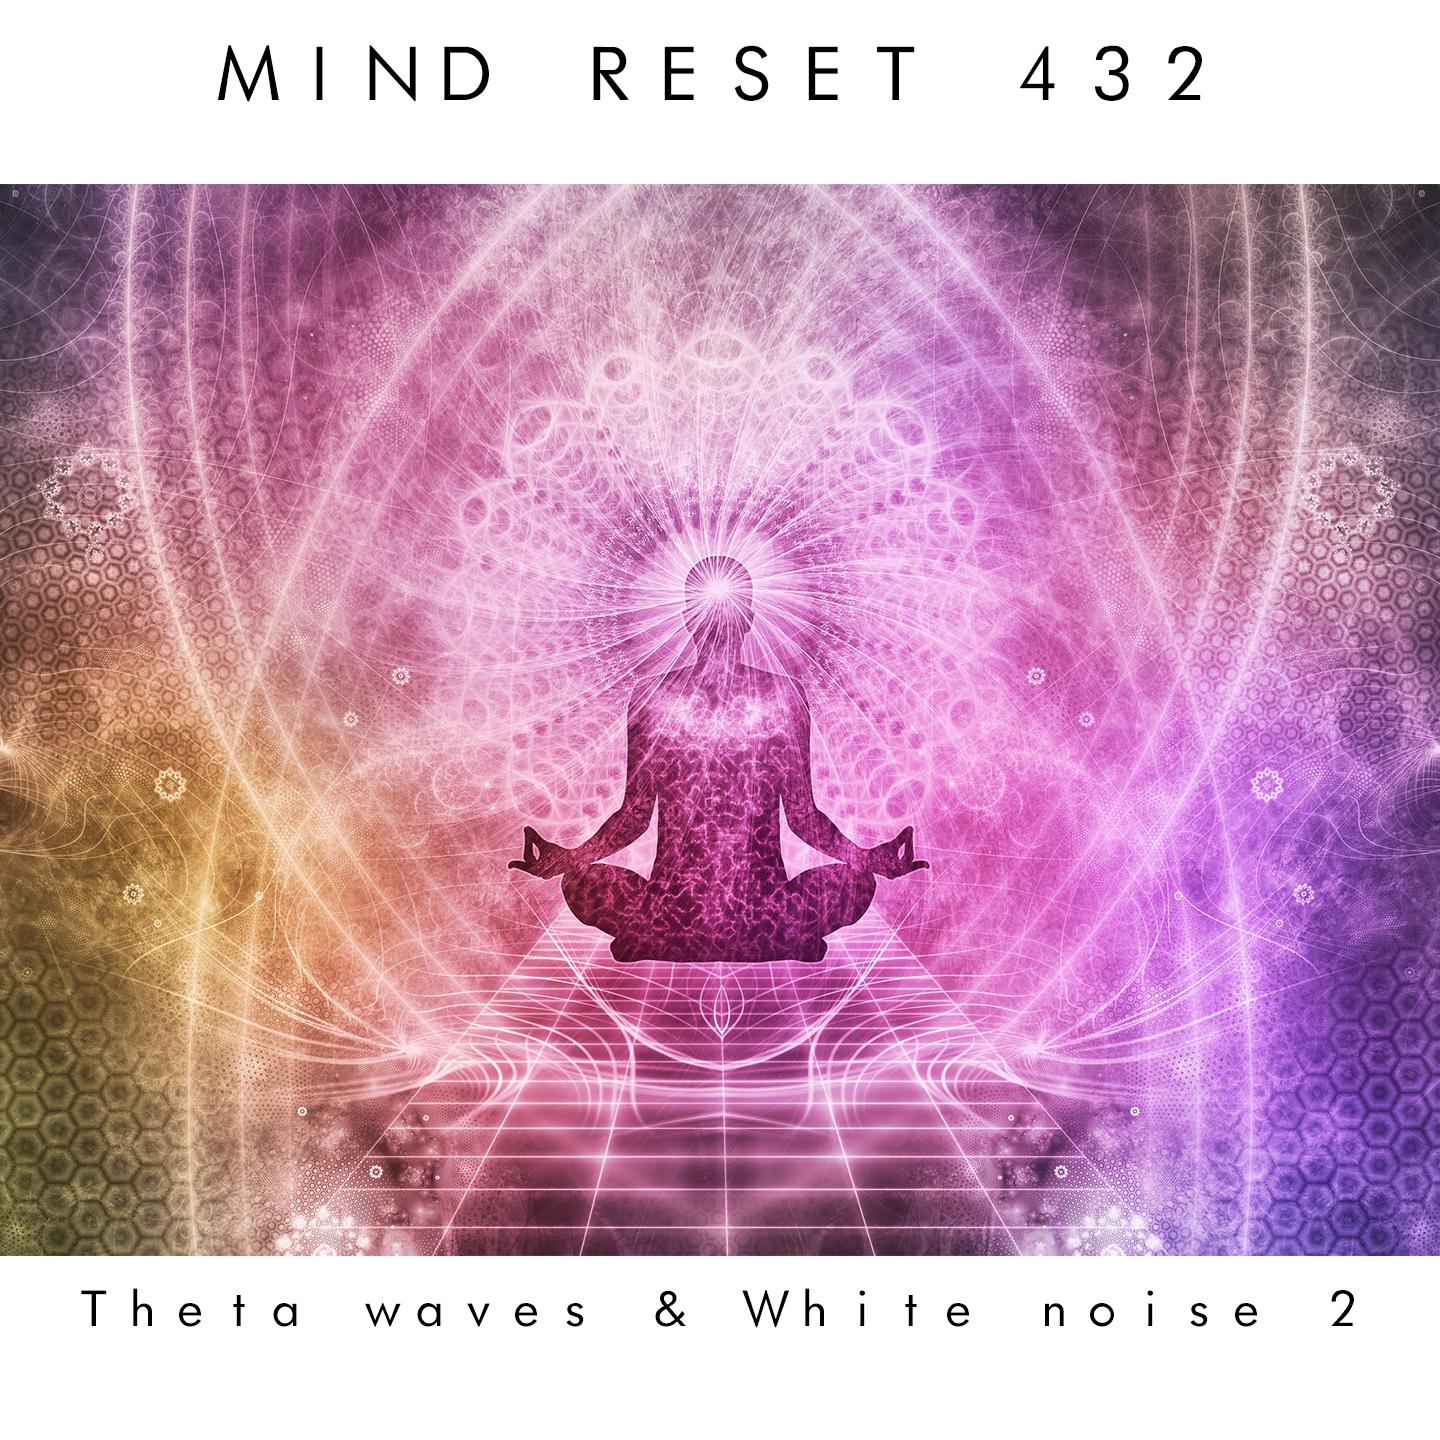 Theta waves & white noise 2